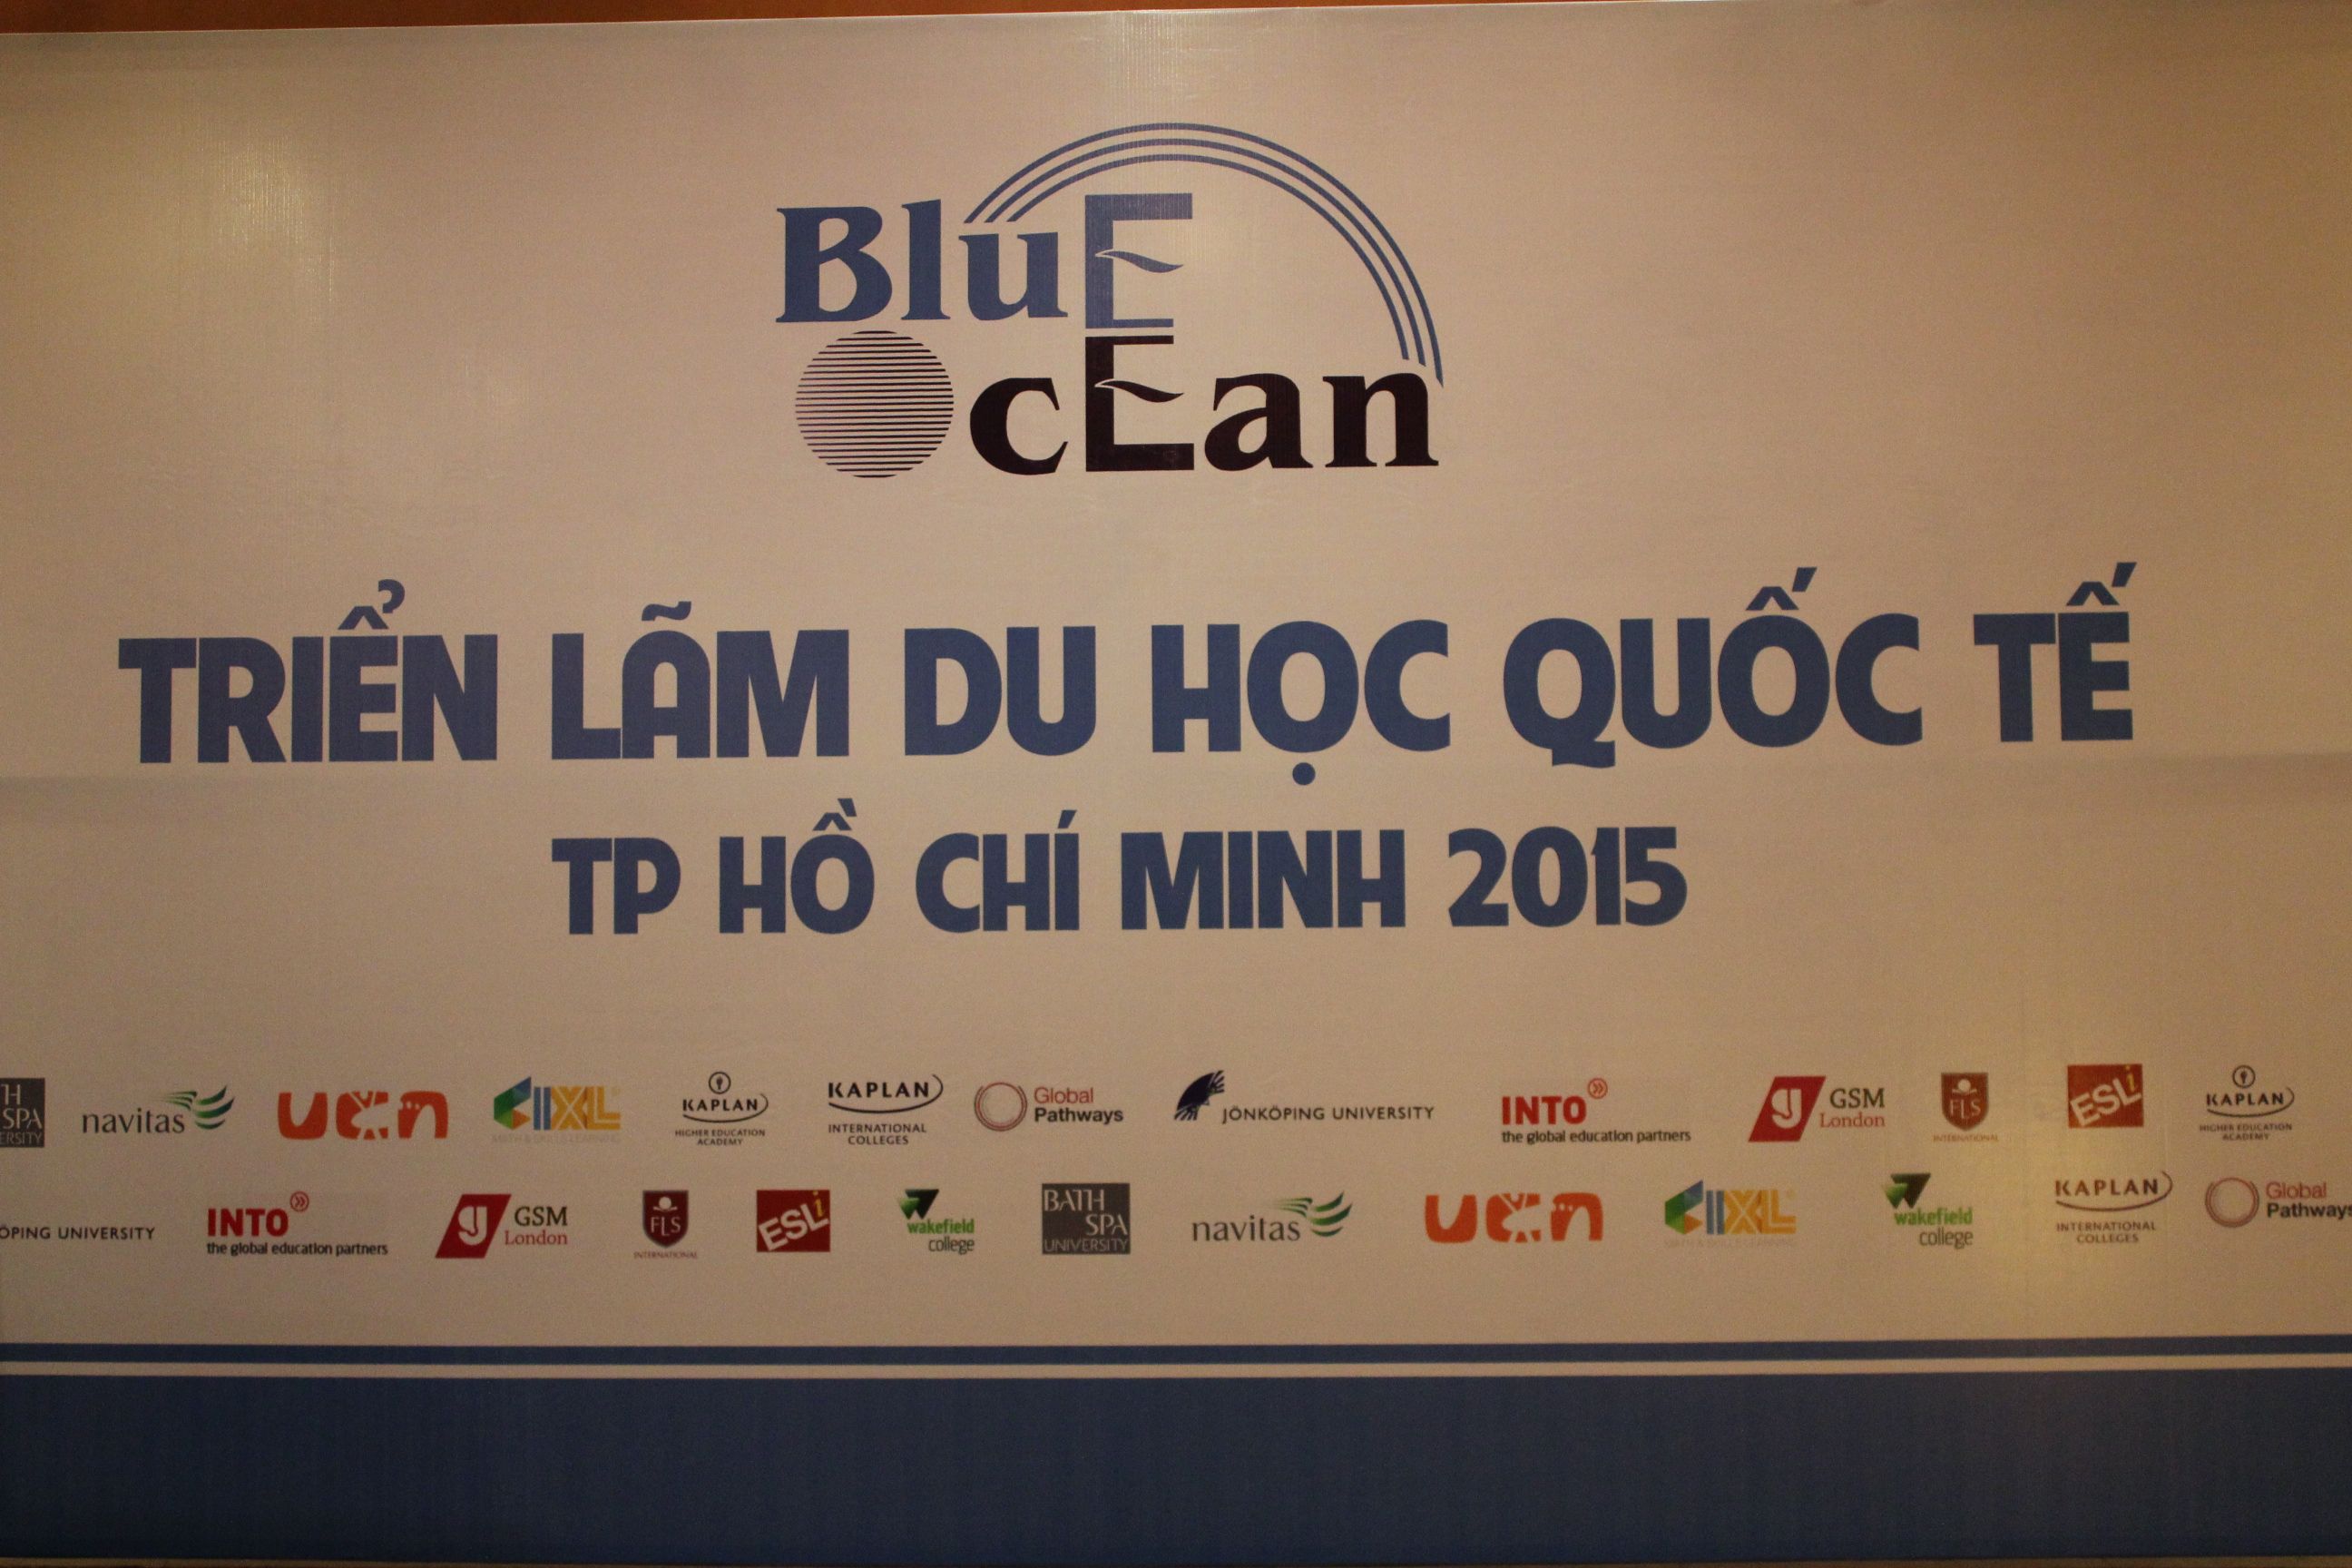 Triển lãm du học quốc tế 2015 tại Hồ Chí Minh